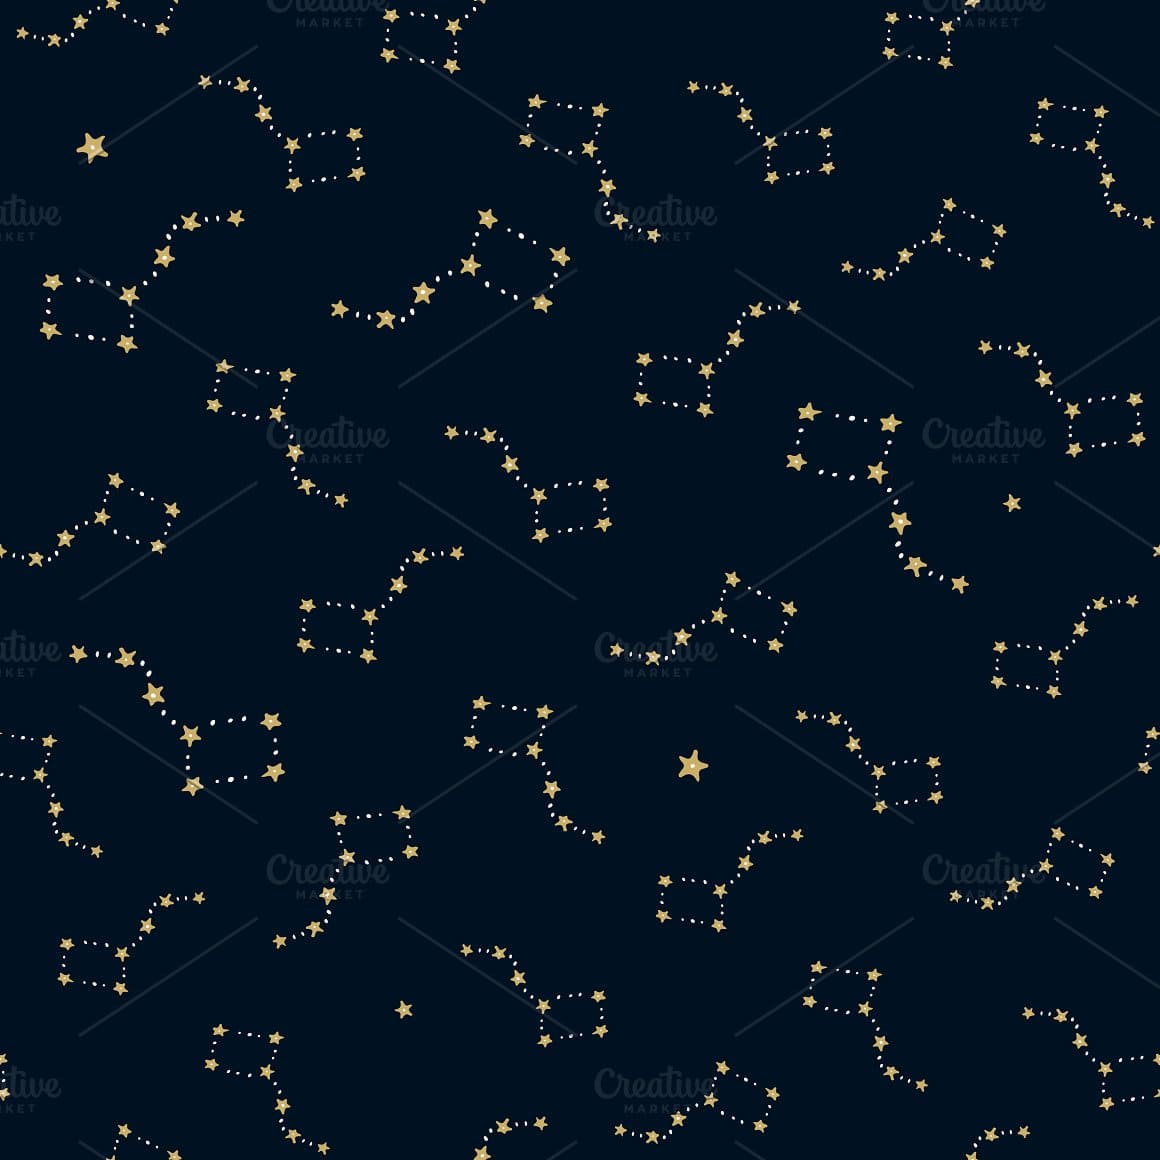 A constellation of golden stars on a dark blue background.